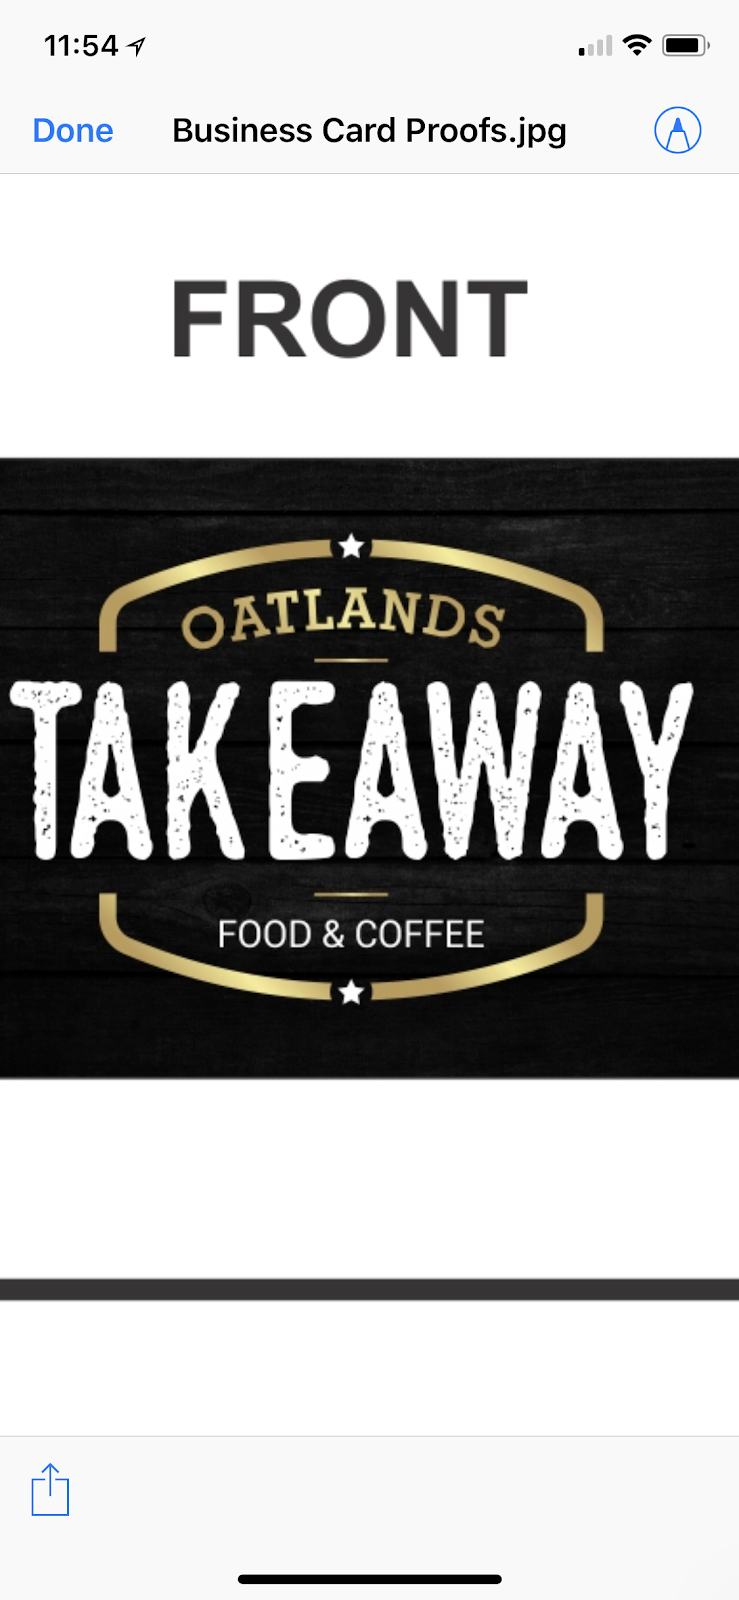 Oatlands Takeaway | meal takeaway | 44 Belmore St E, Oatlands NSW 2117, Australia | 0296306054 OR +61 2 9630 6054